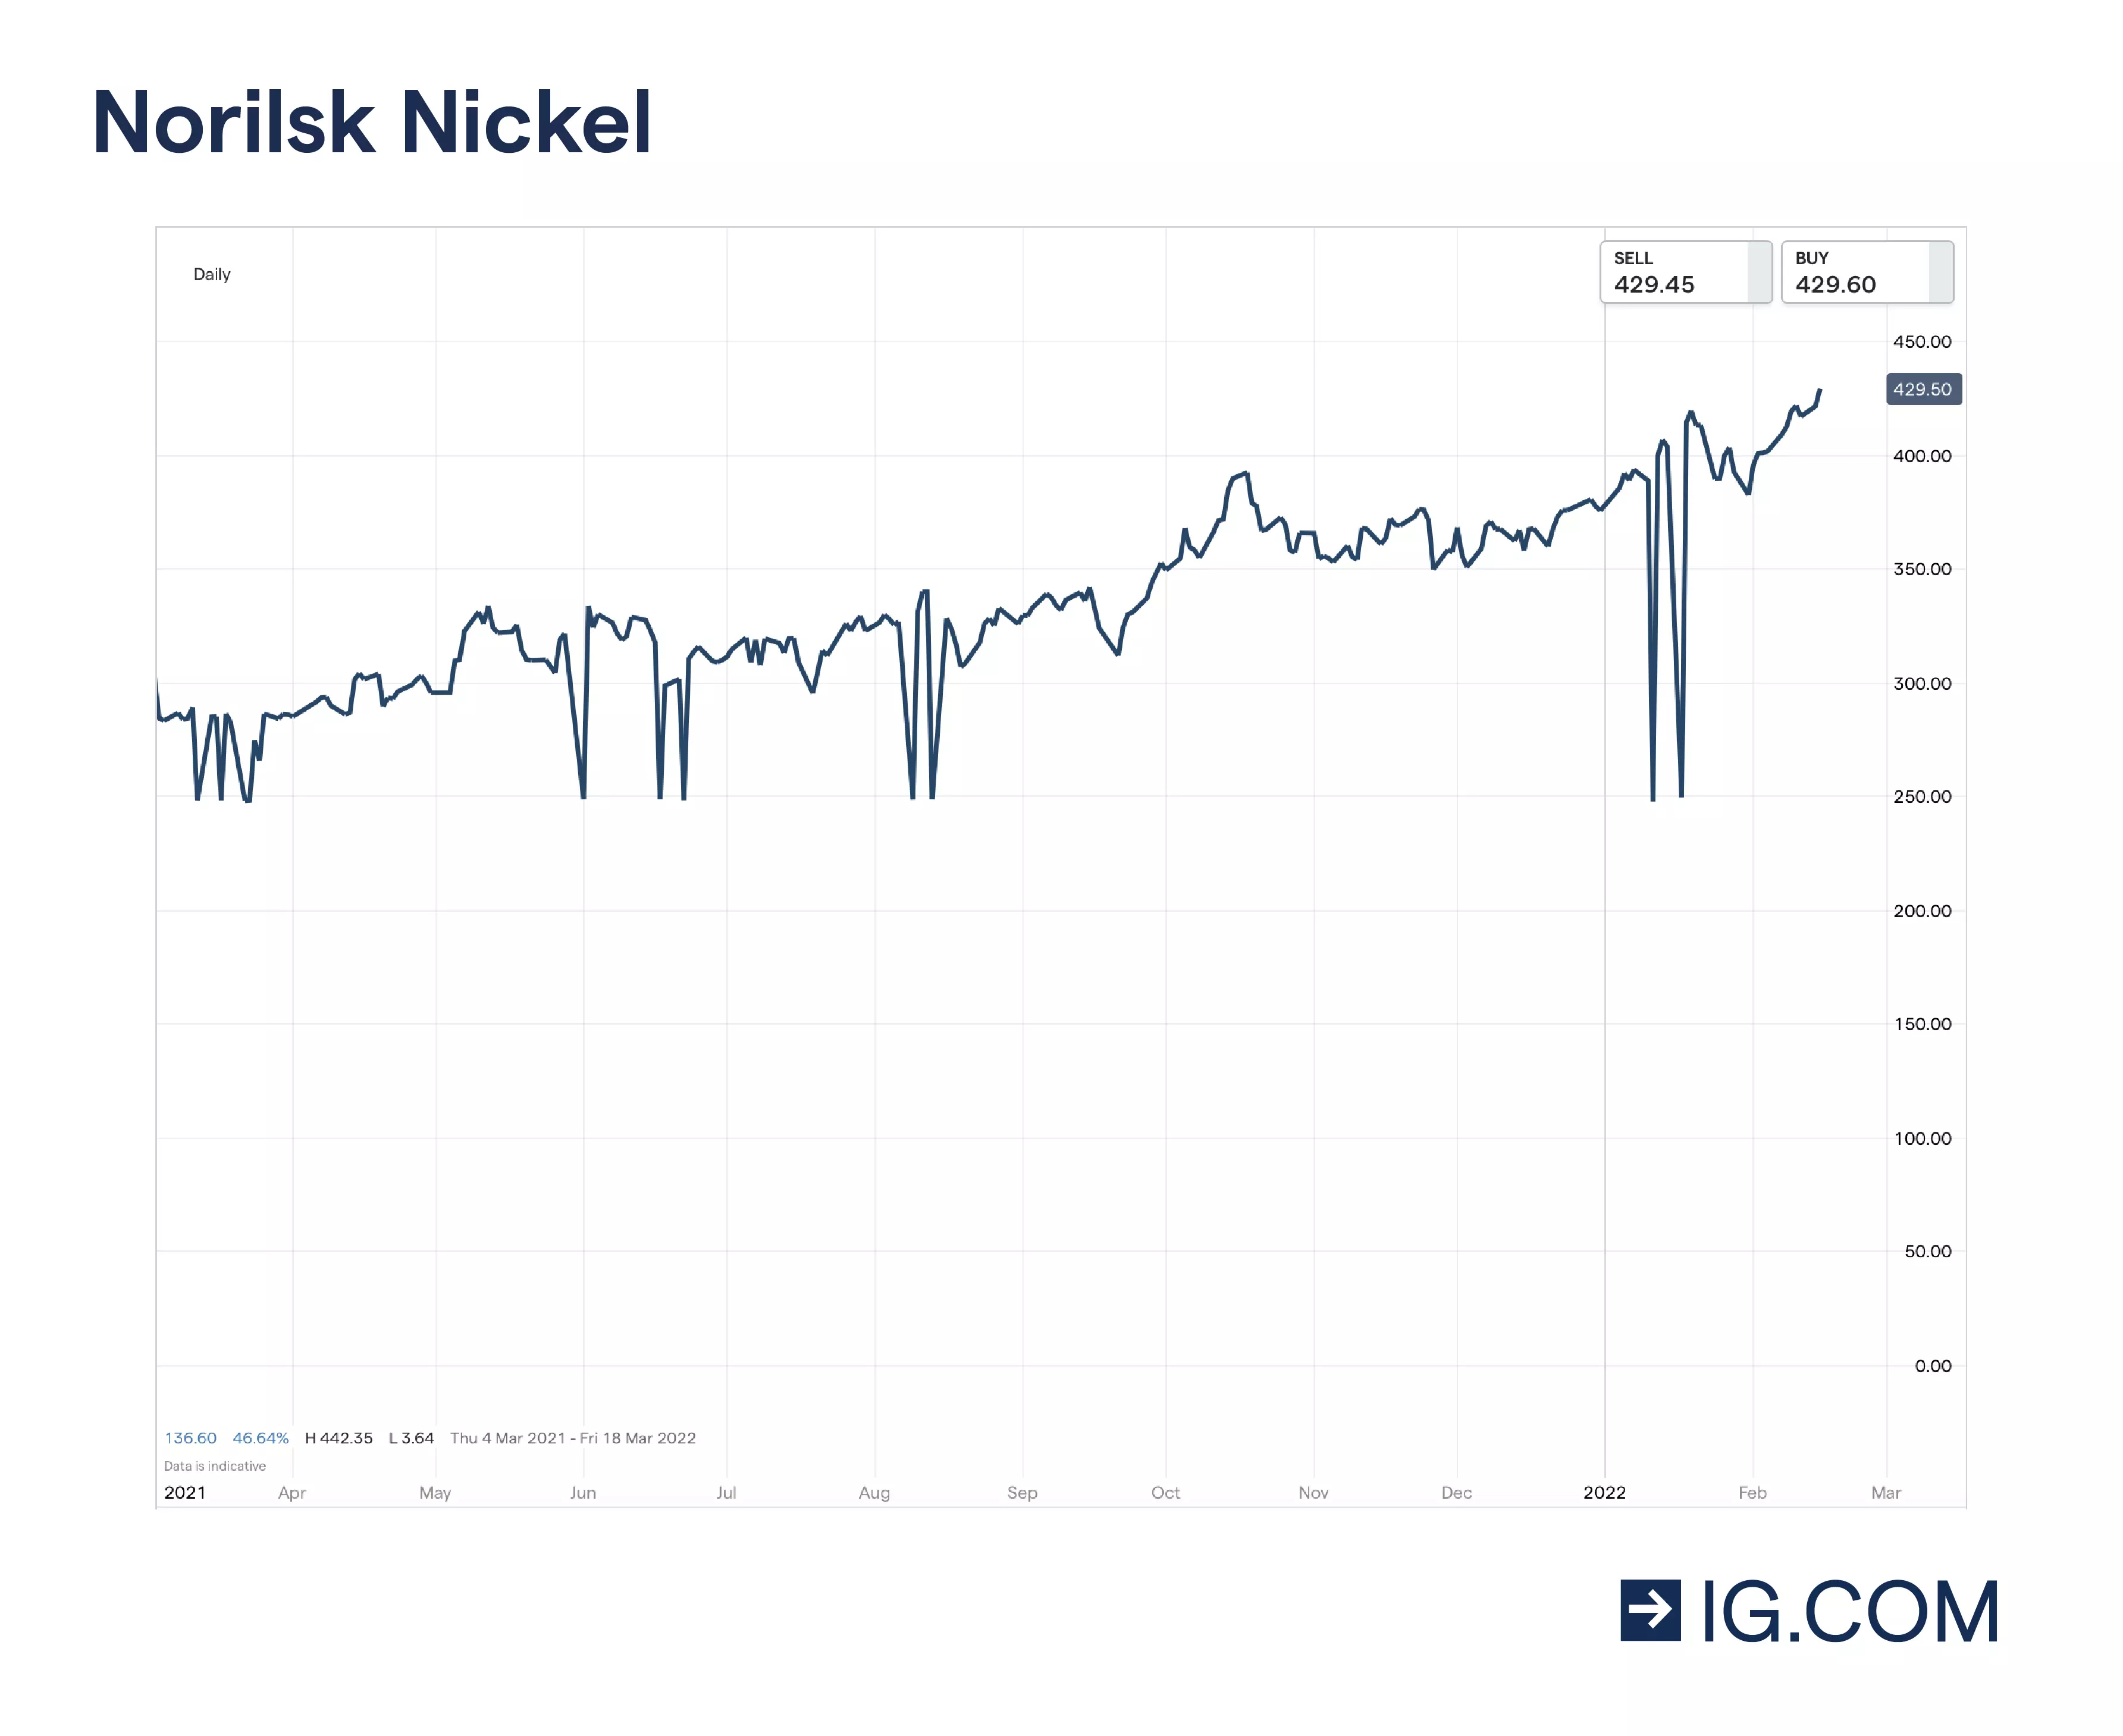 Gráfico de las acciones de Norilsk Nickel que muestra los distintos puntos de precio durante un año